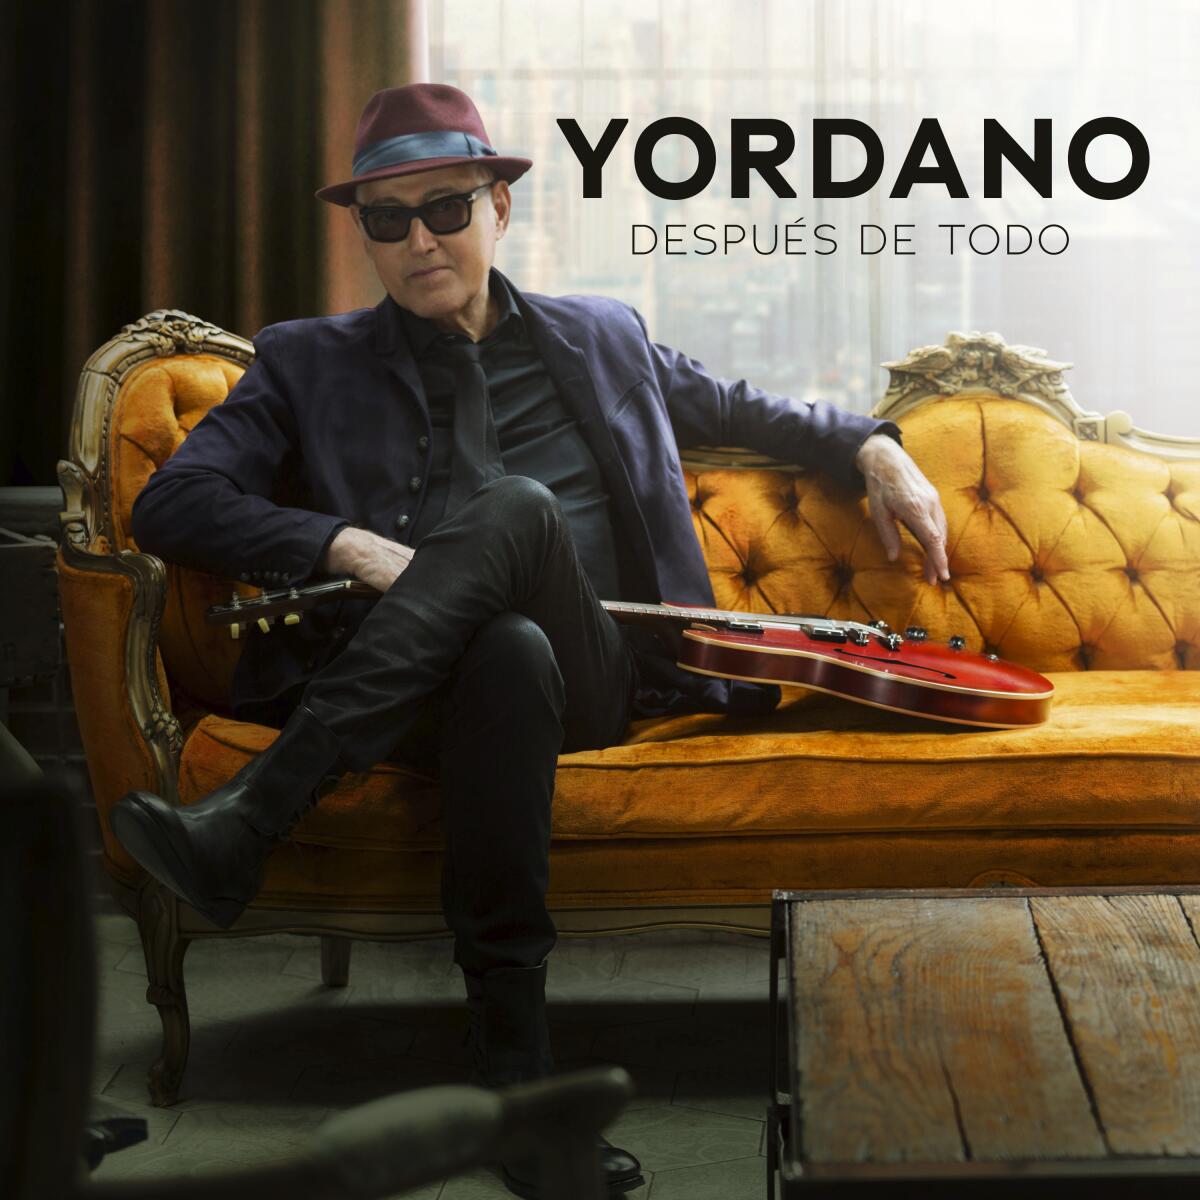 La portada del nuevo álbum de Yordano, "Después de todo", en una imagen proporcionada por Sony Music Entertainment. (Sony Music Entertainment vía AP)